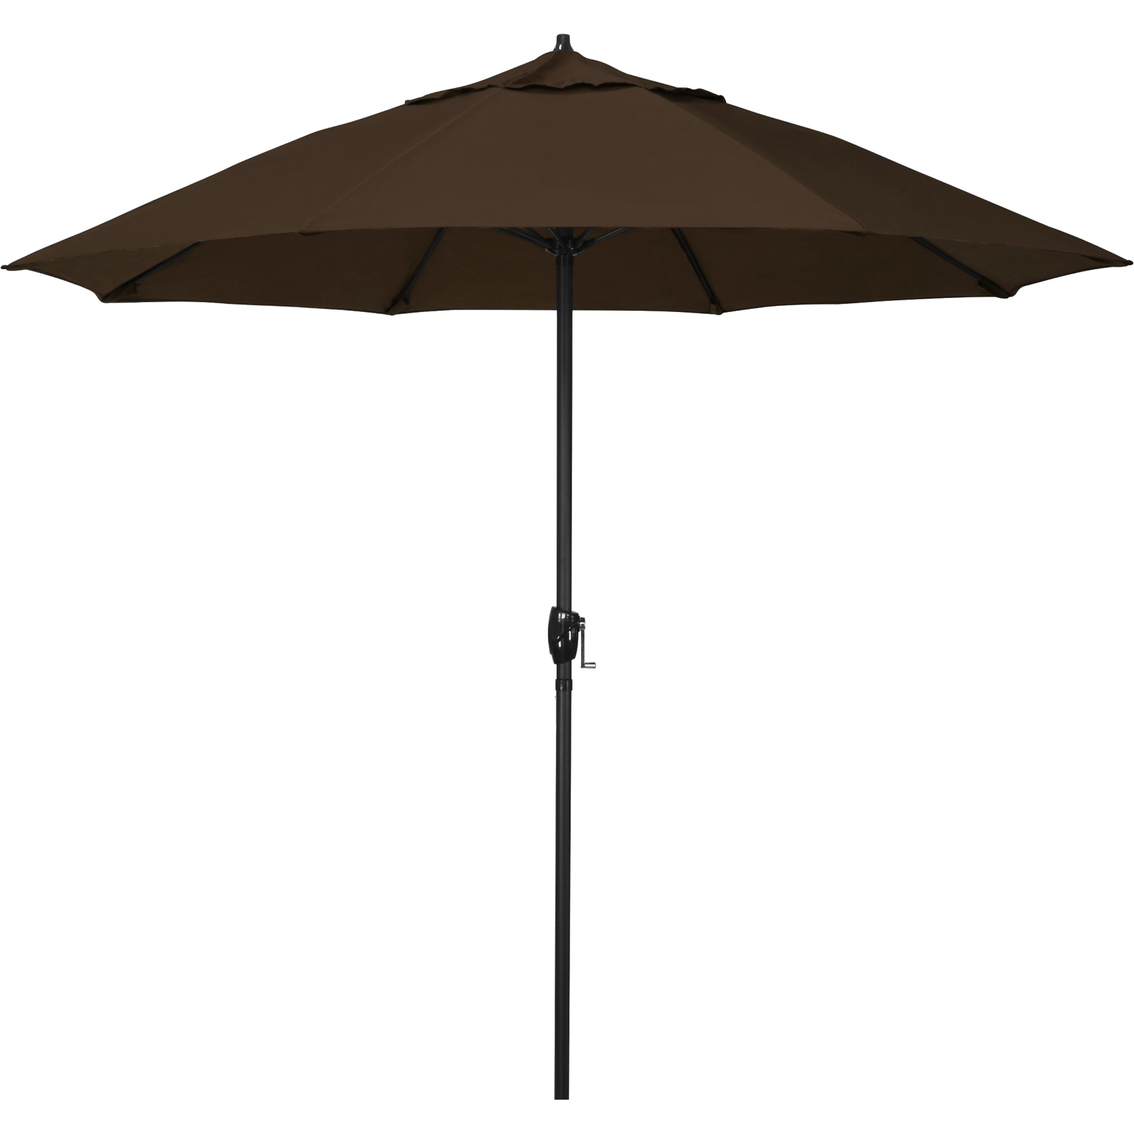 California Umbrella Casa 9 ft. Patio Umbrella with Aluminum Pole